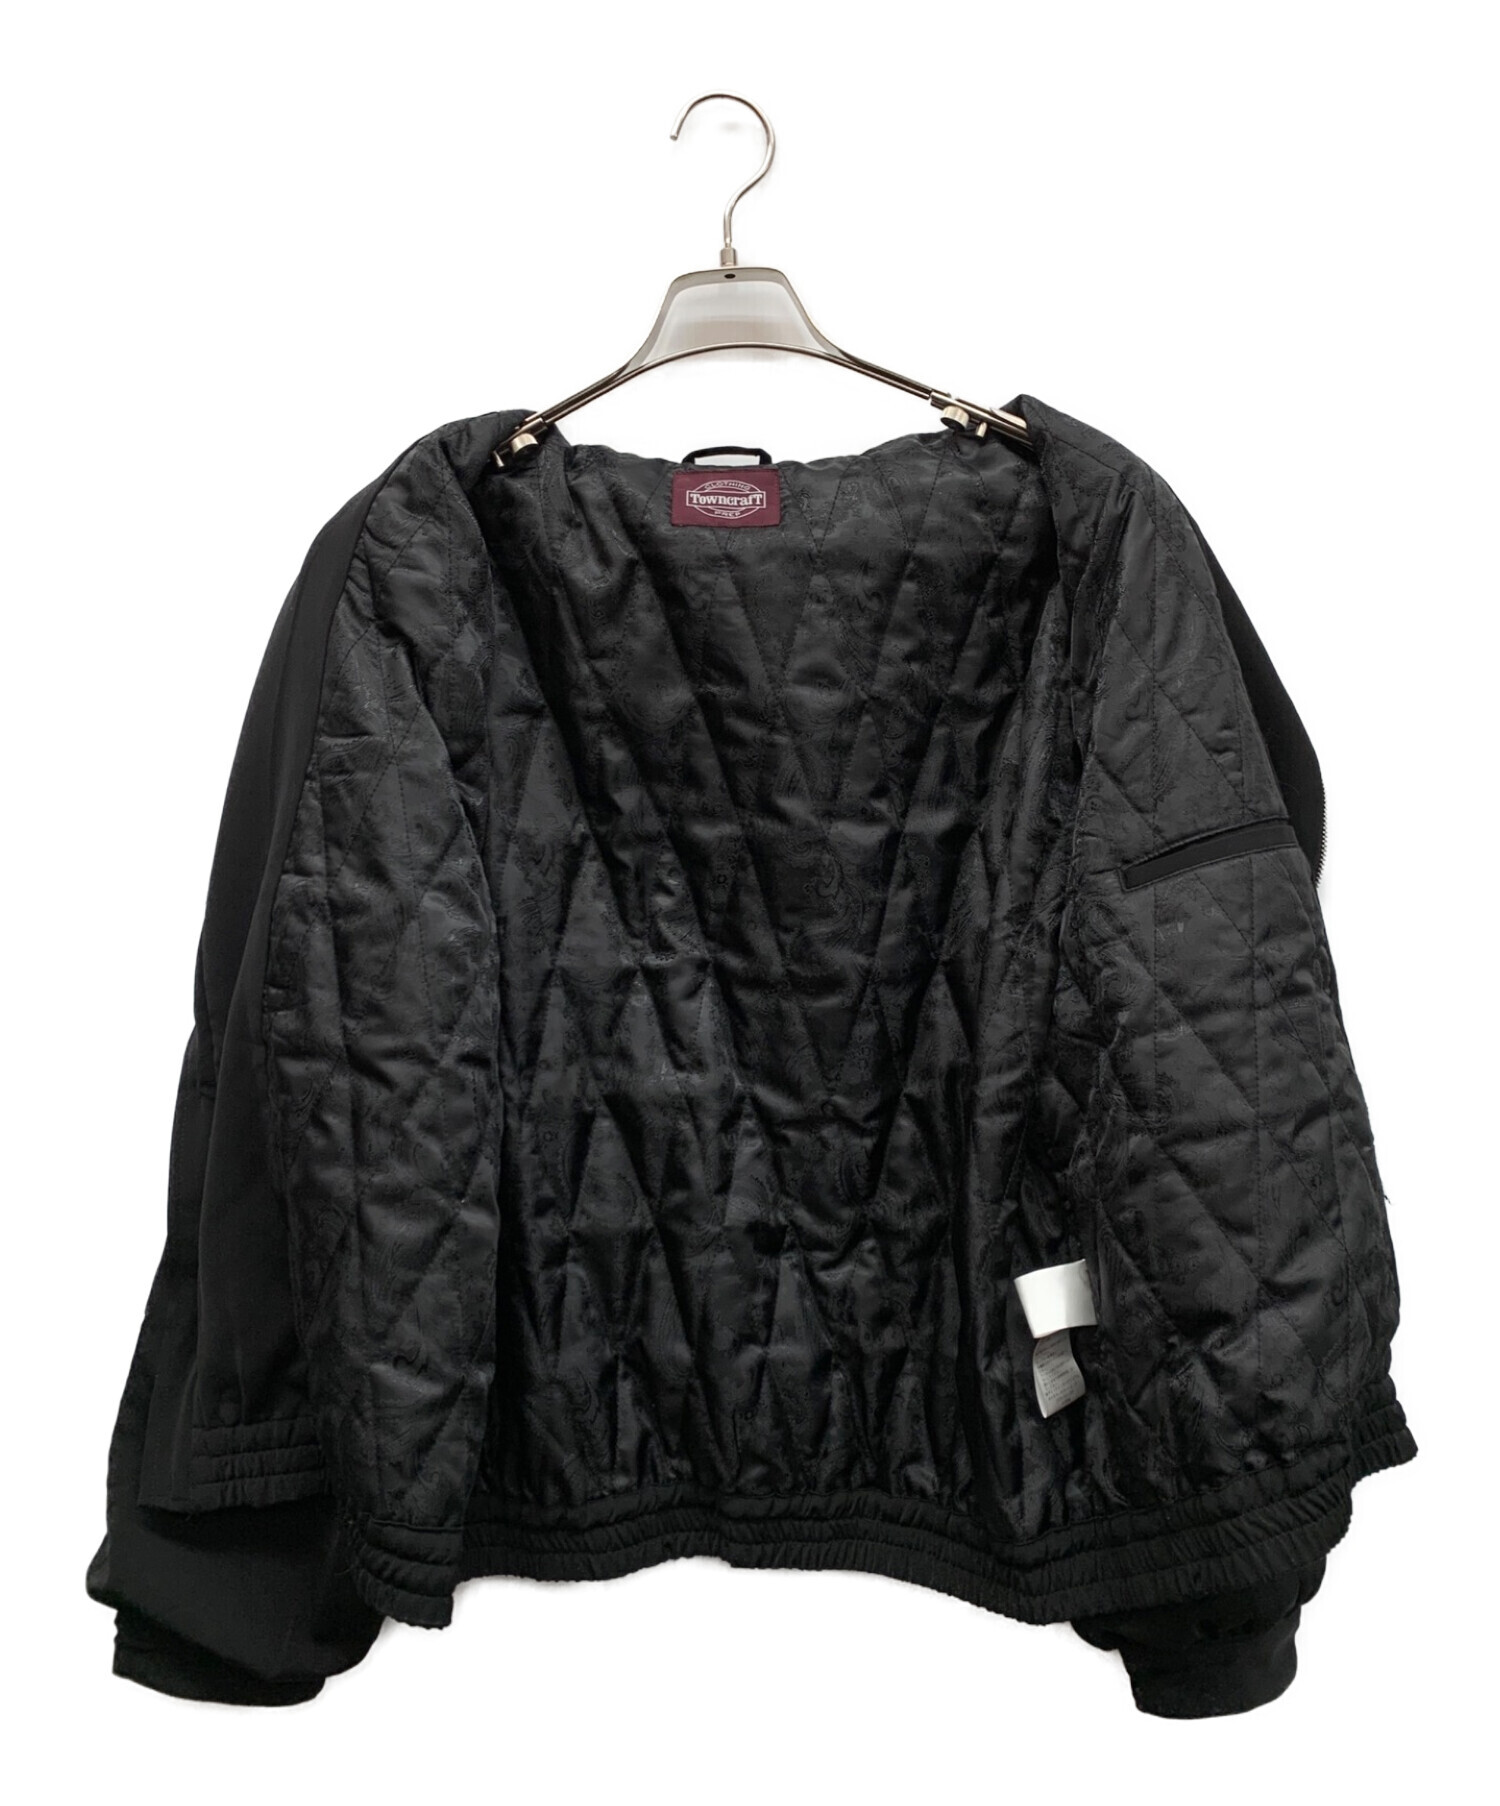 TOWN CRAFT (タウンクラフト) スーベニアジャケット ブラック サイズ:M